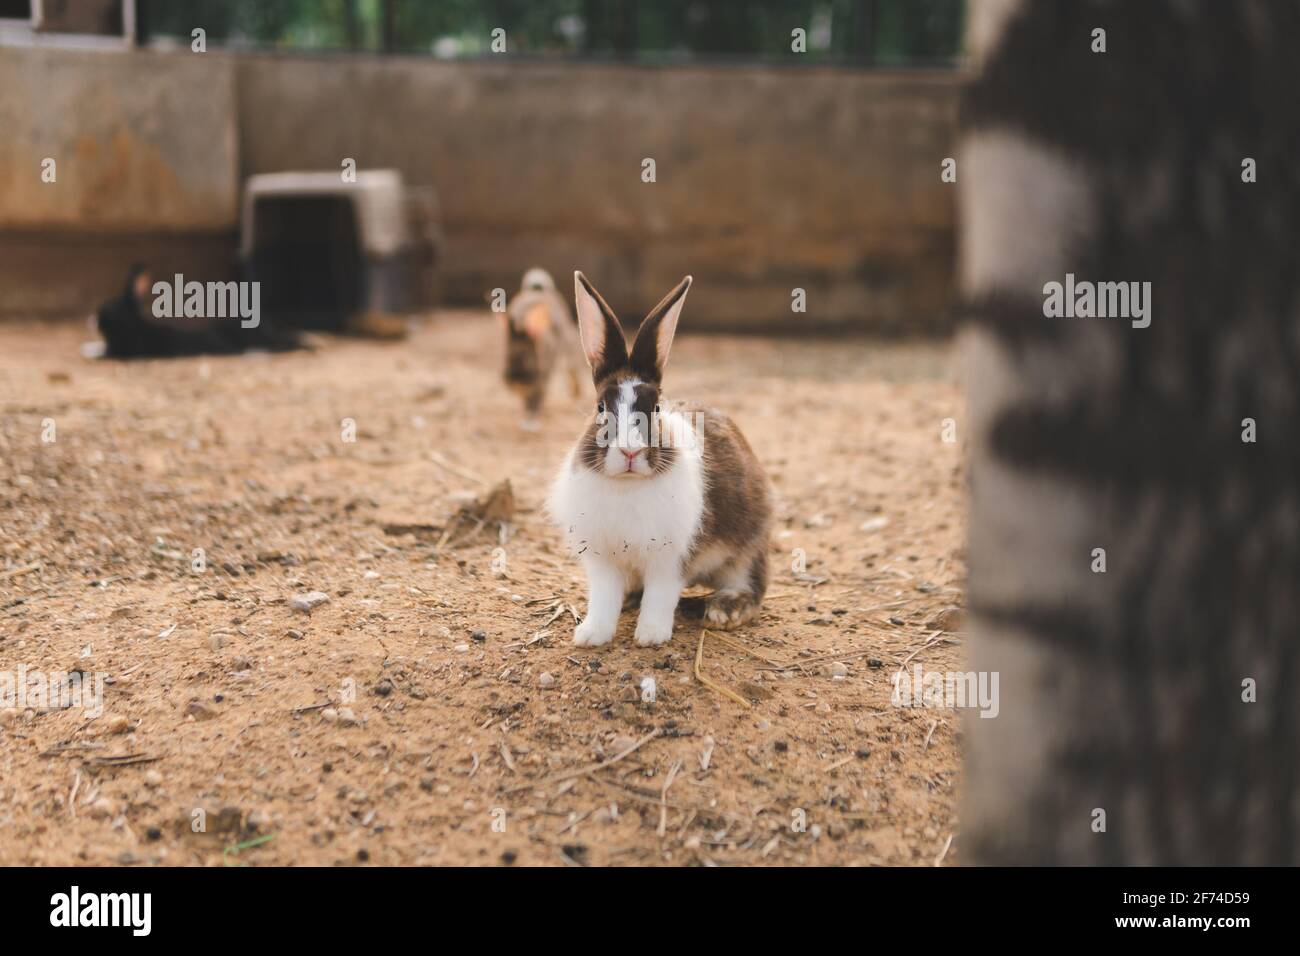 Le lapin est sur le sol en regardant la caméra Banque D'Images